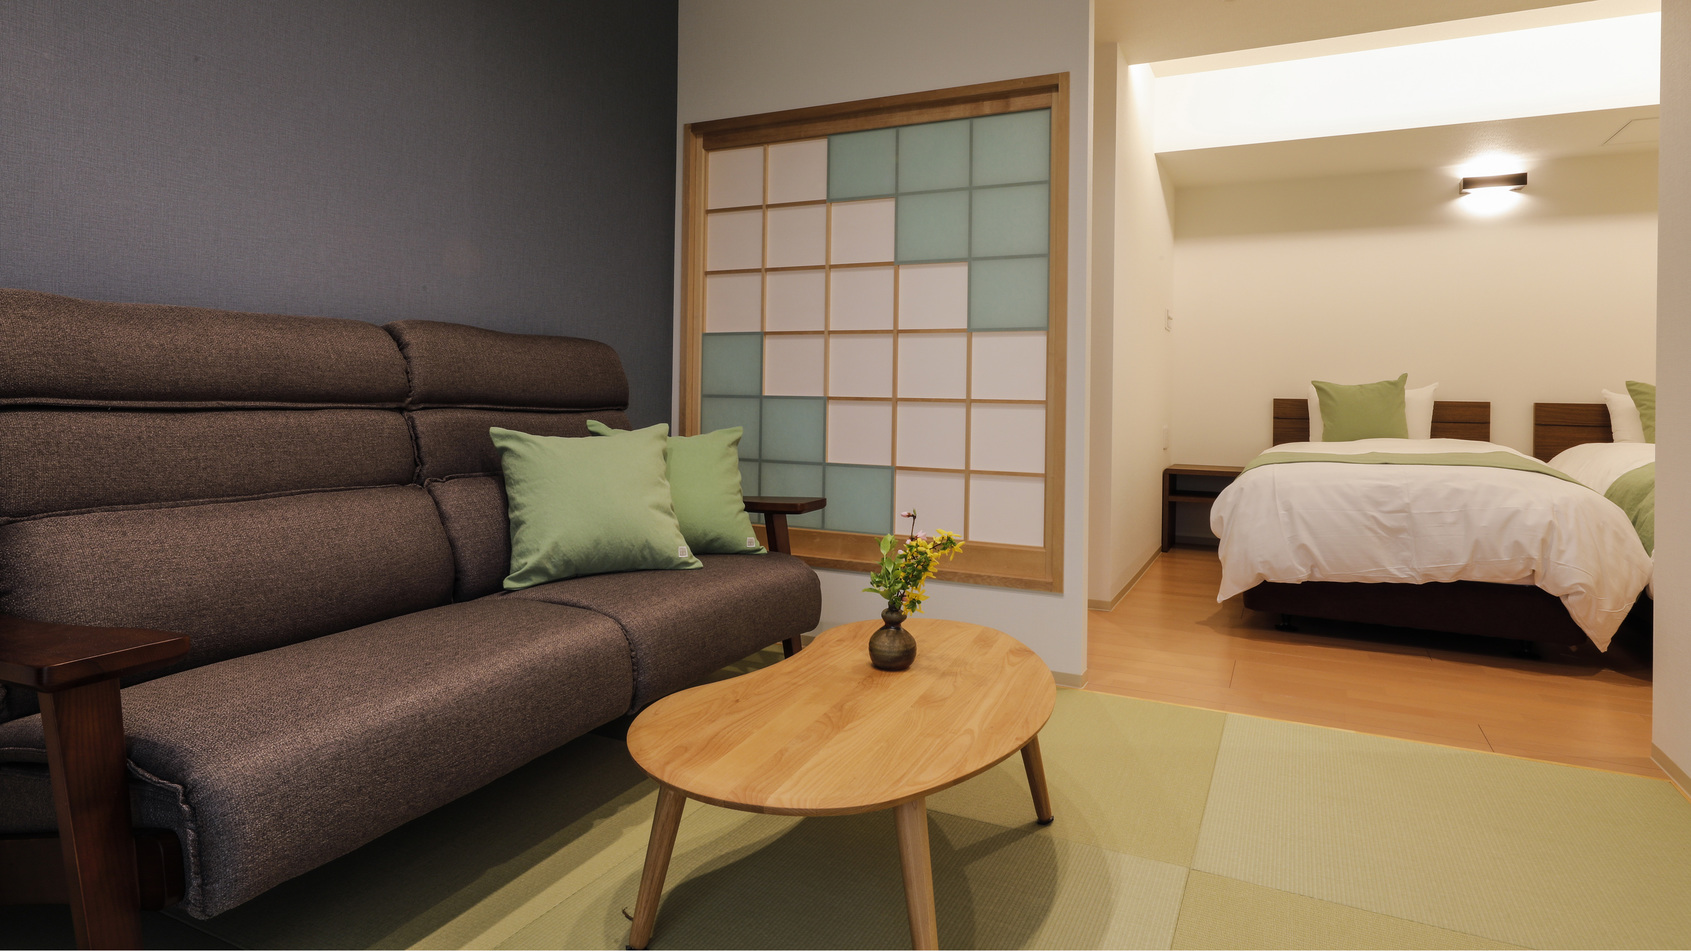 2022年4月オープン眺望風呂客室【立夏】居間ベッドルーム広々ゆったりソファー